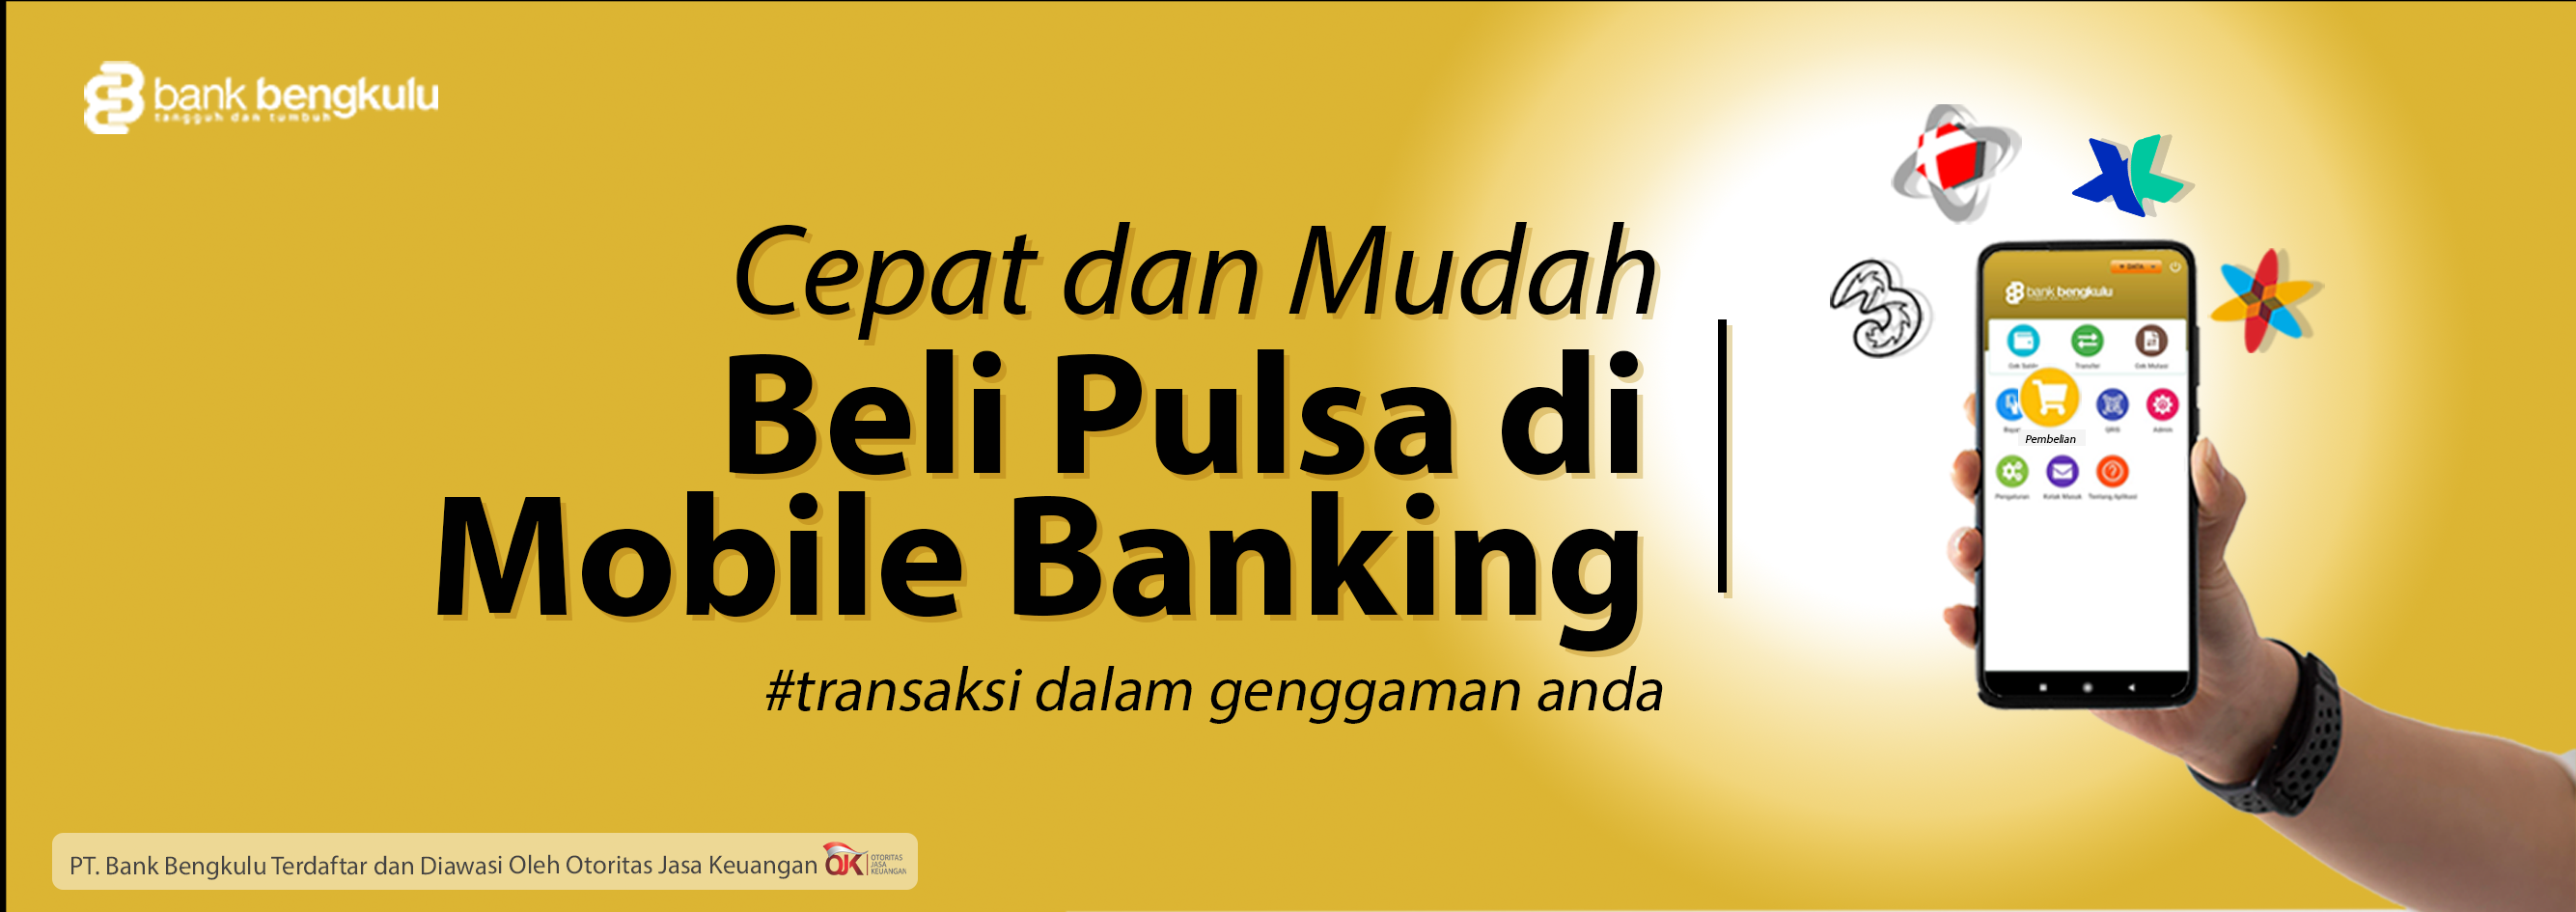 BELI PULSA DI MOBILE BANKING